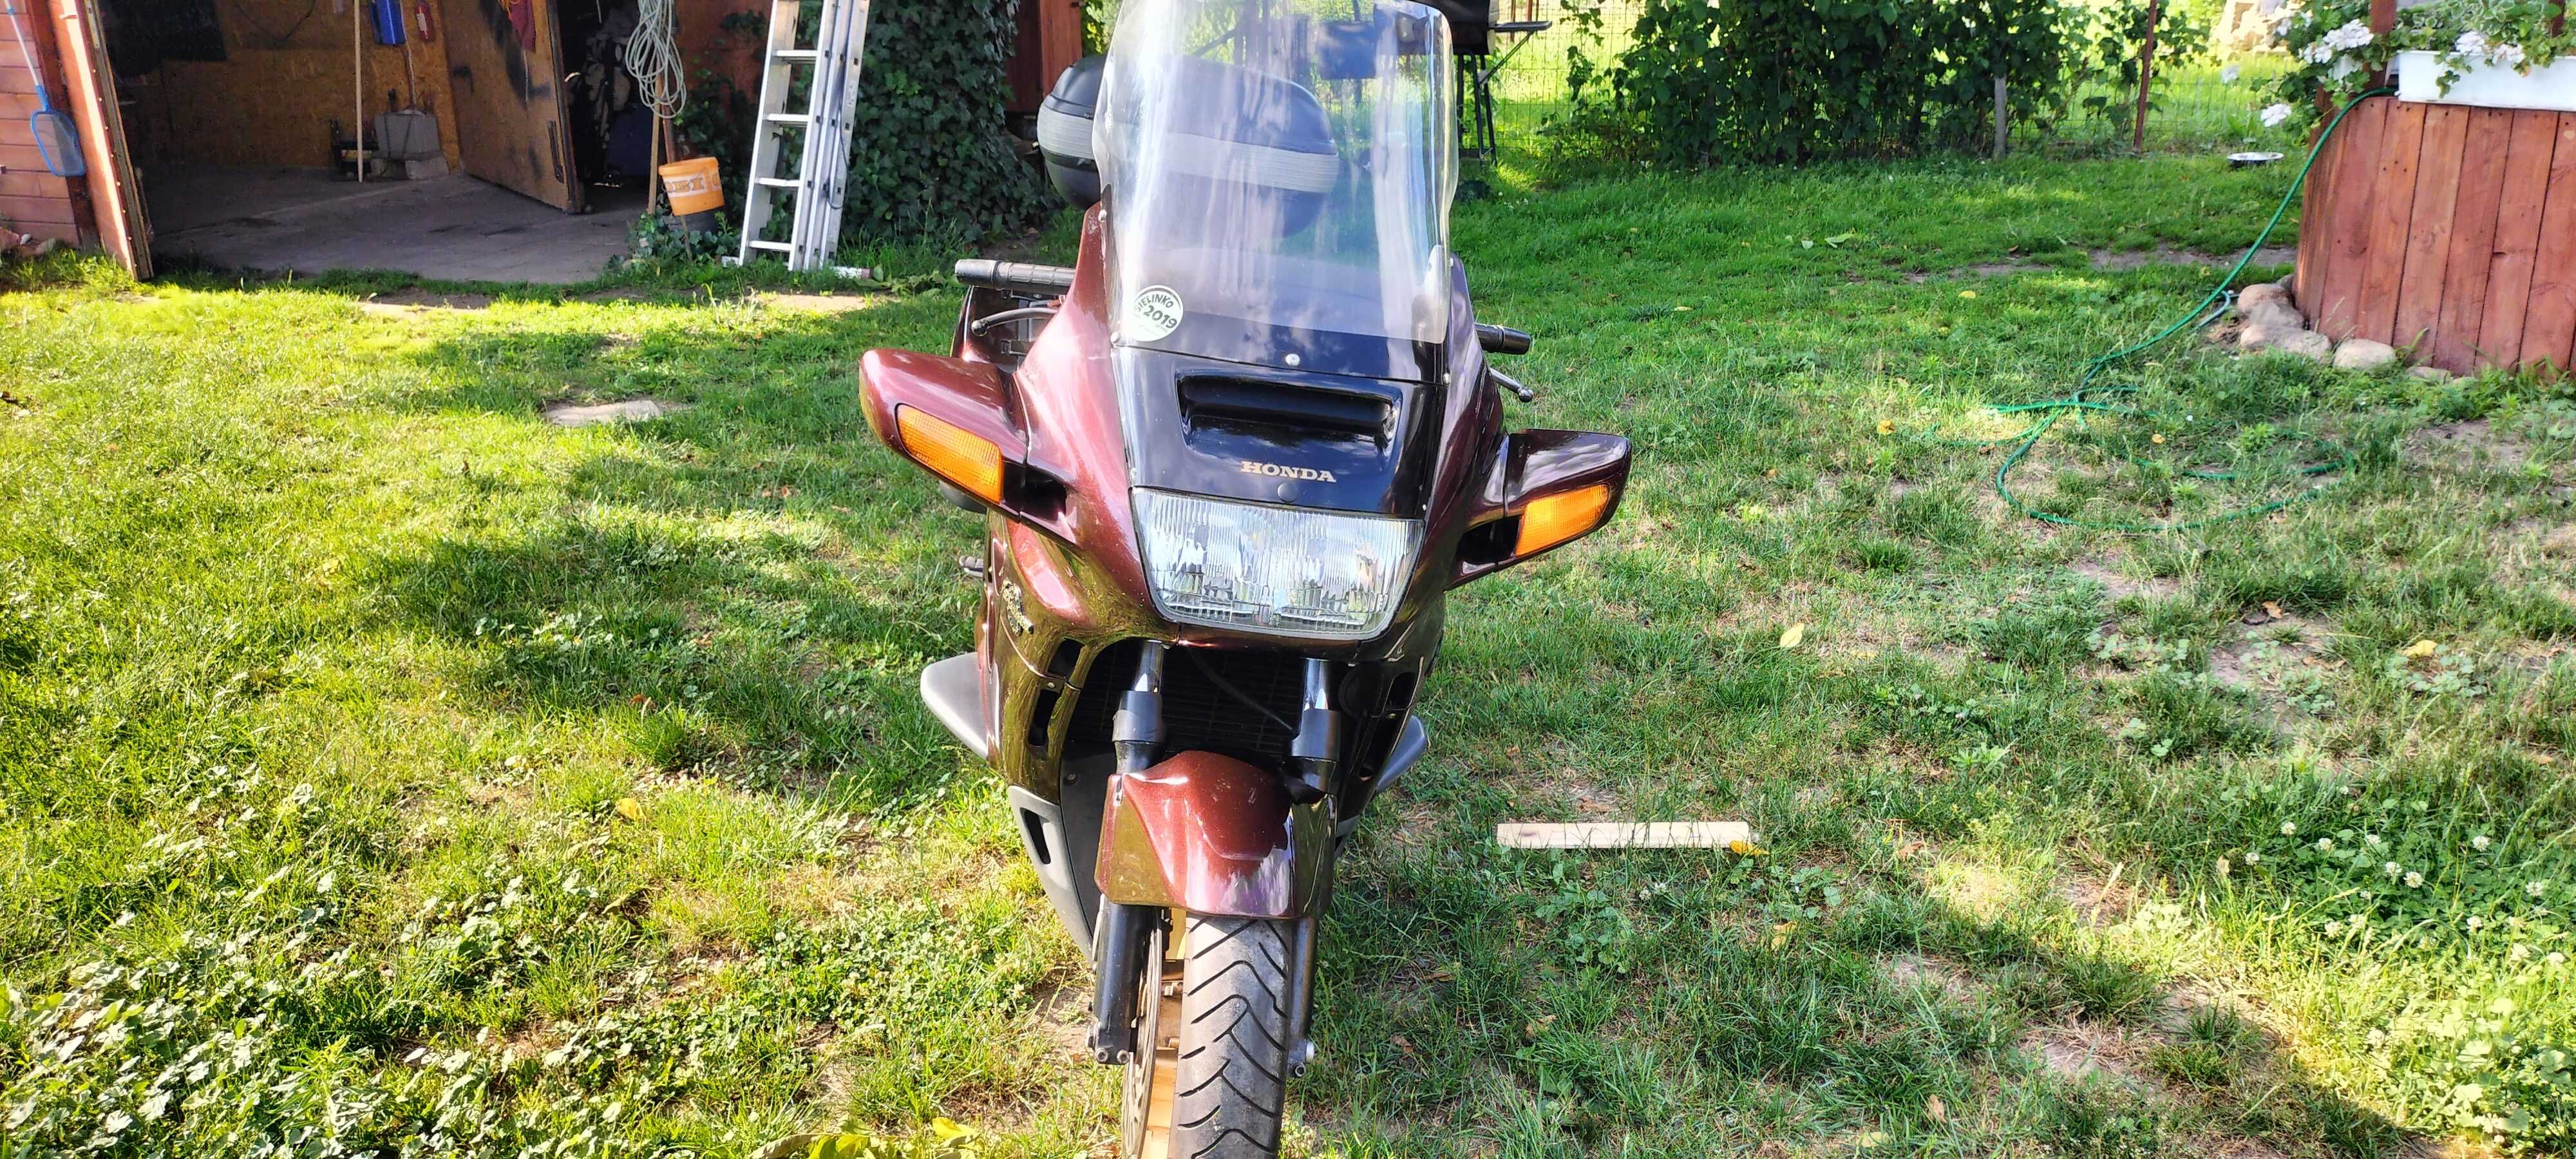 Motocykl Honda ST 1100